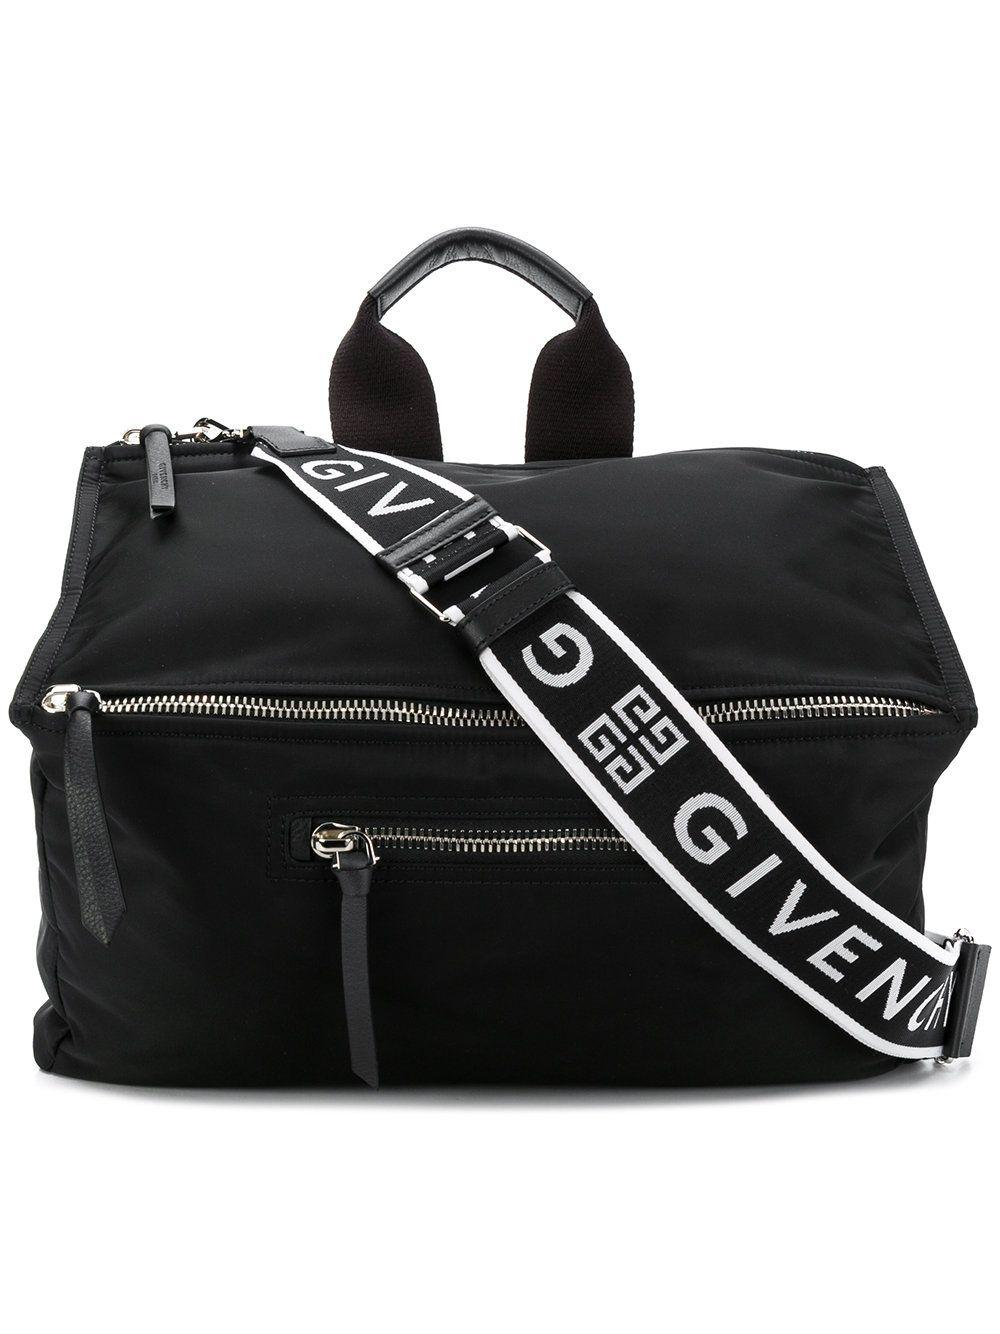 Givenchy Black Polyamide Travel Bag in Black for Men - Lyst